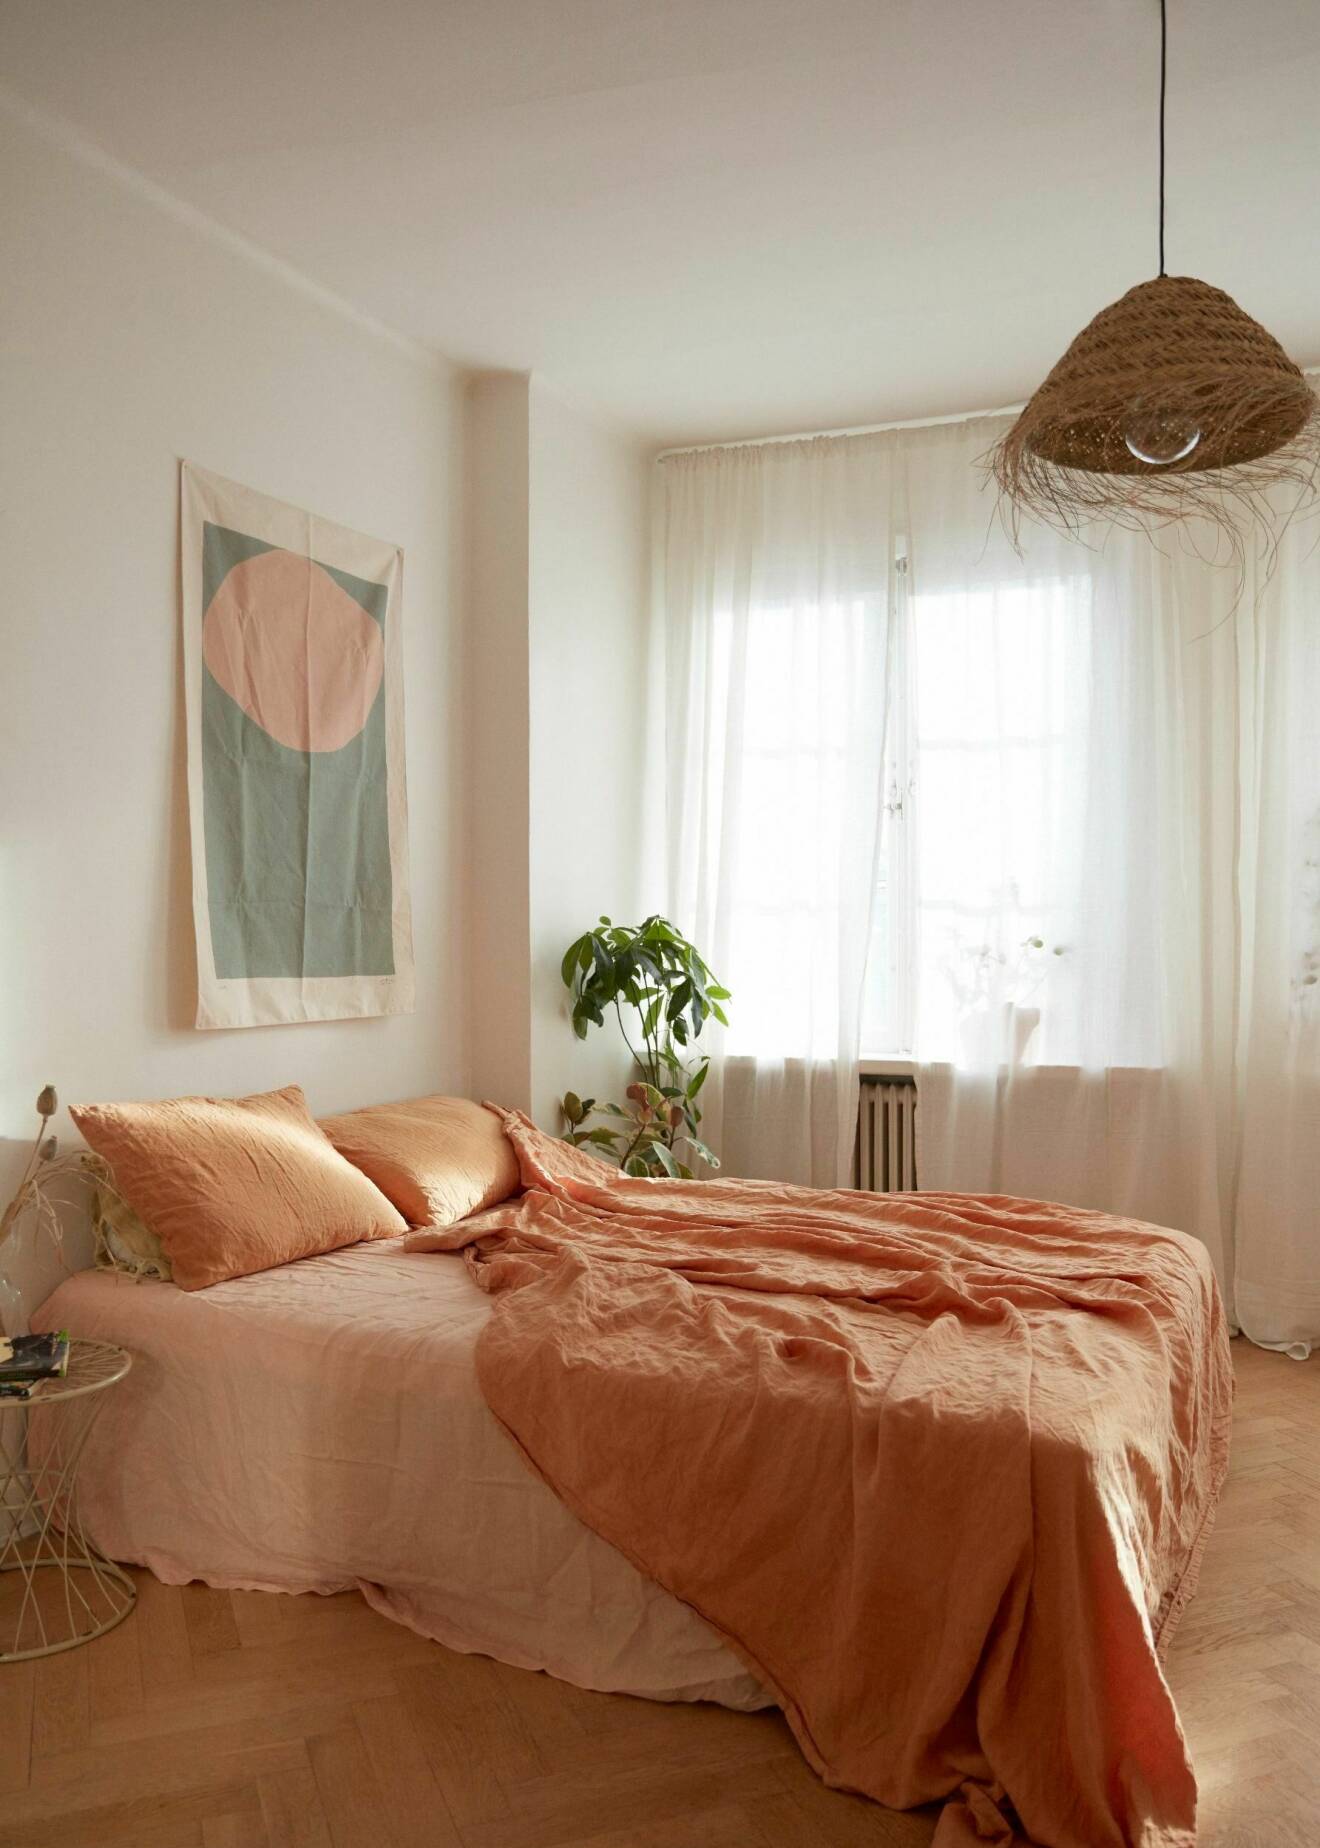 somrigt inrett sovrum med linnelakan i orange